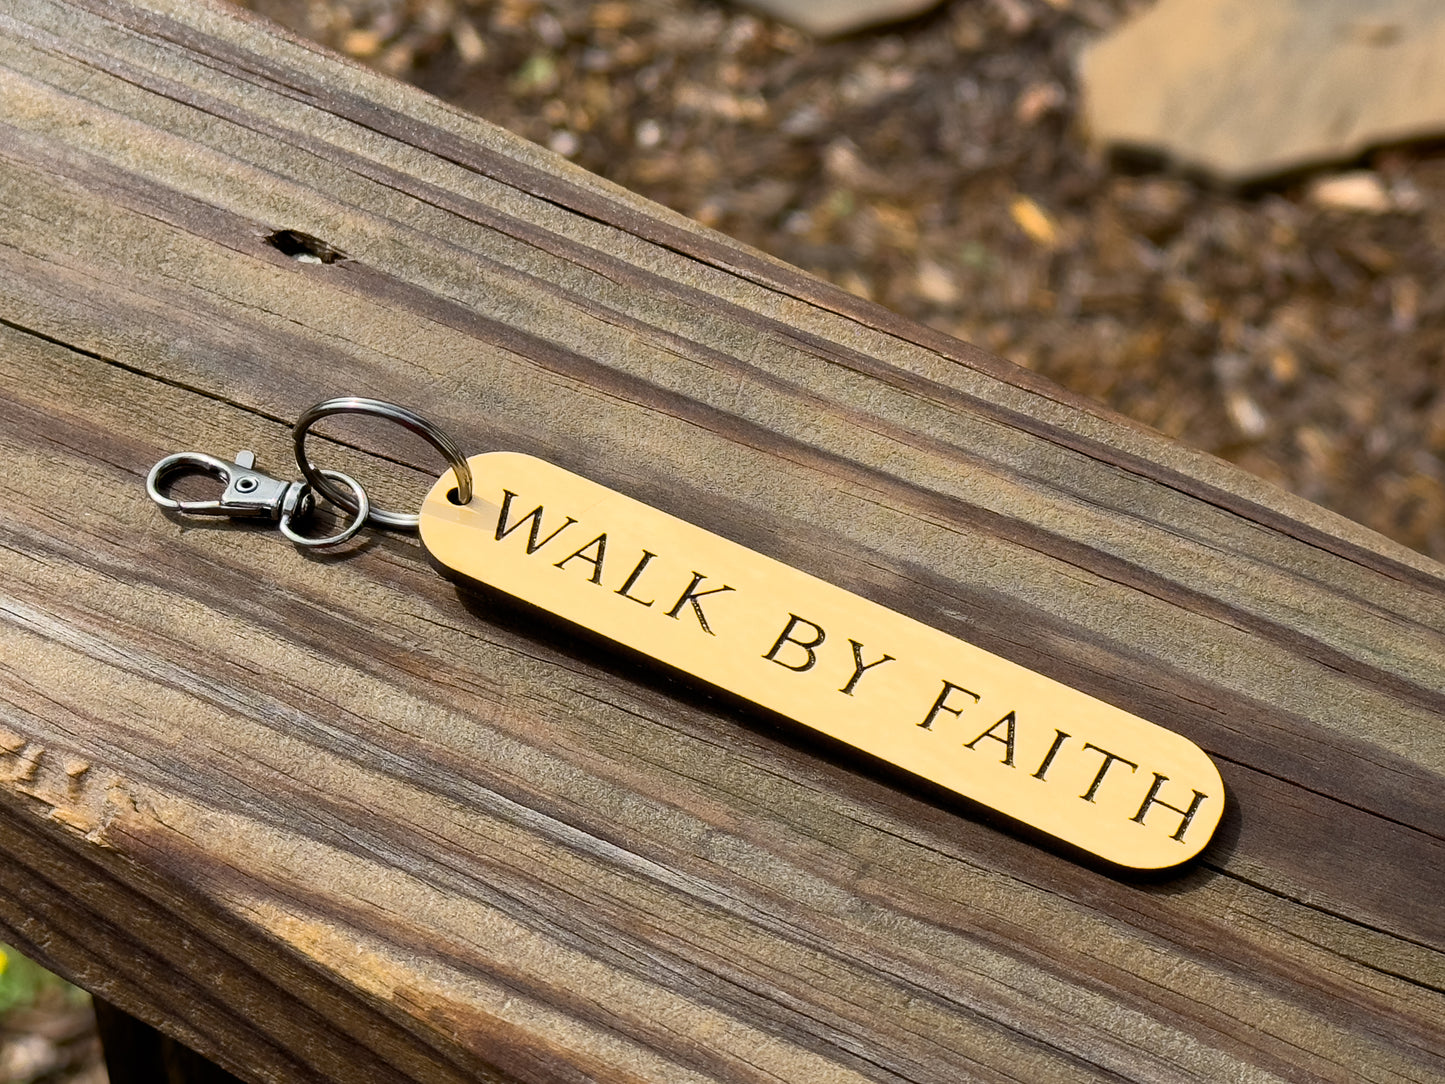 Walk By Faith Christian Keychain